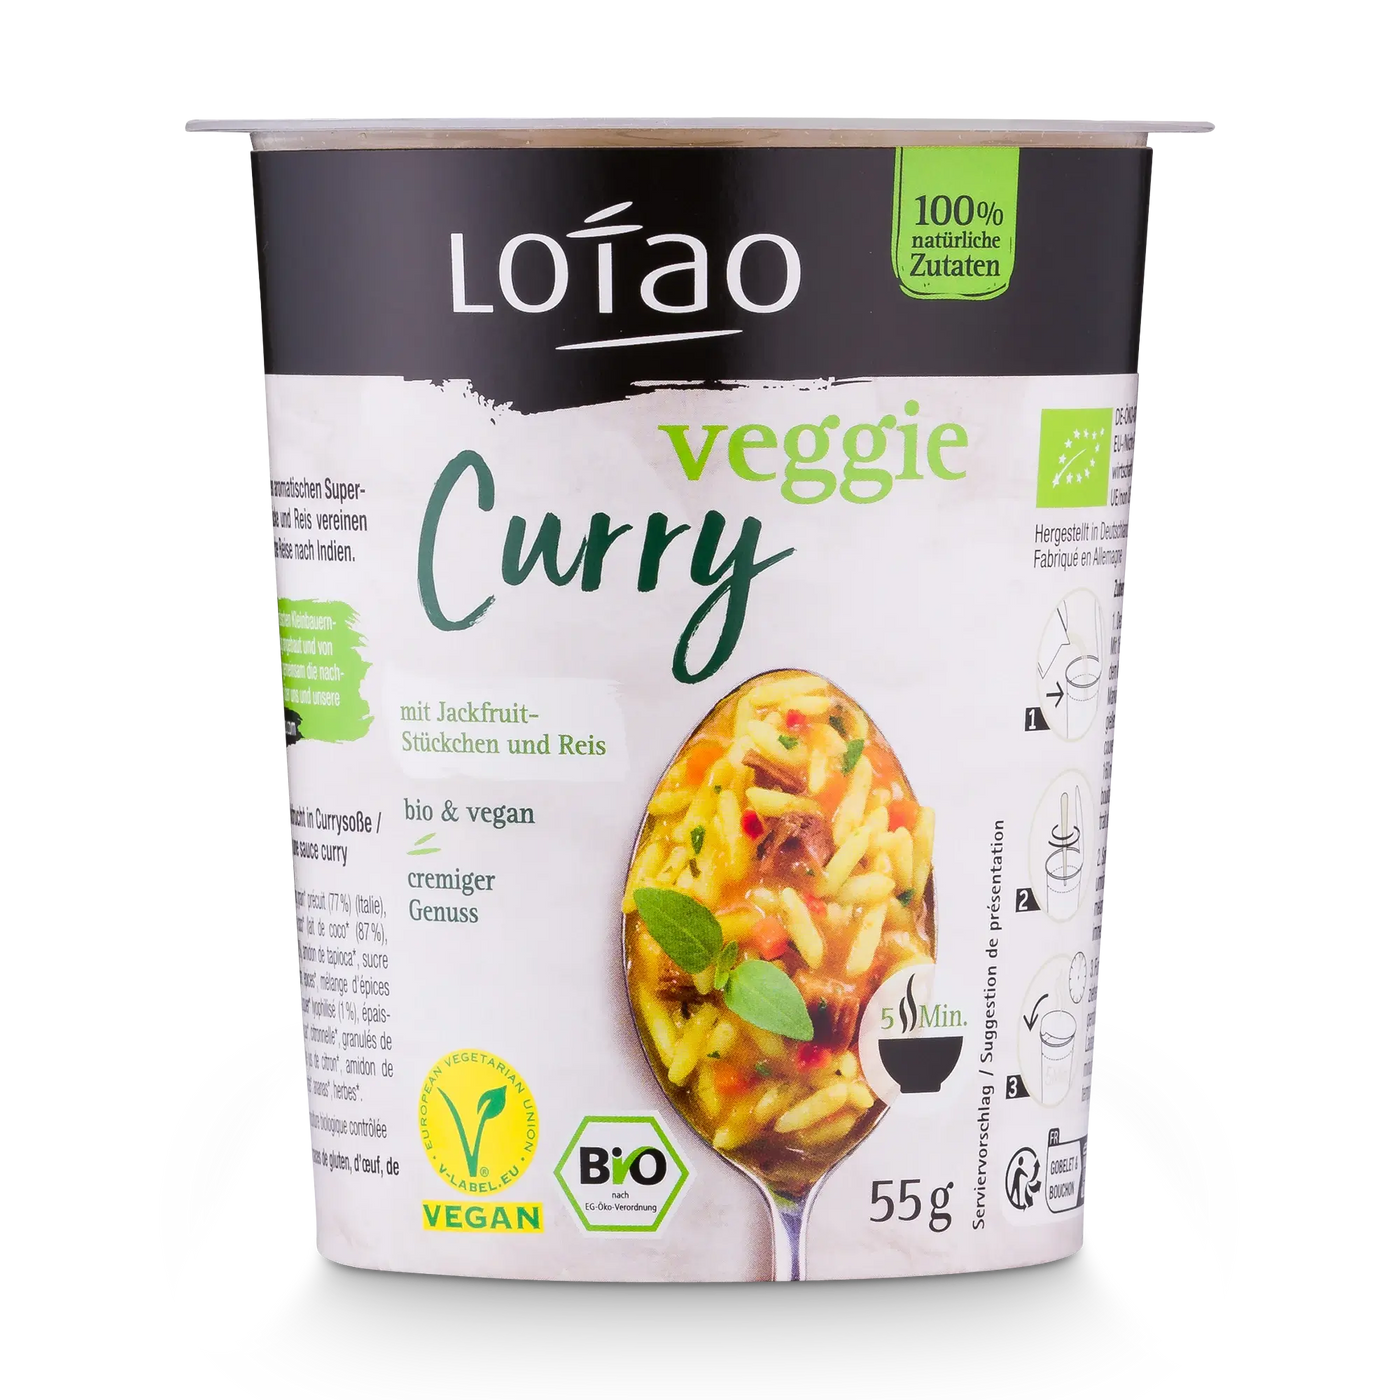 Lotao Veggie Curry mit veganen Bio Jackfruit-Stückchen und Reis ist vegan, bio und lecker